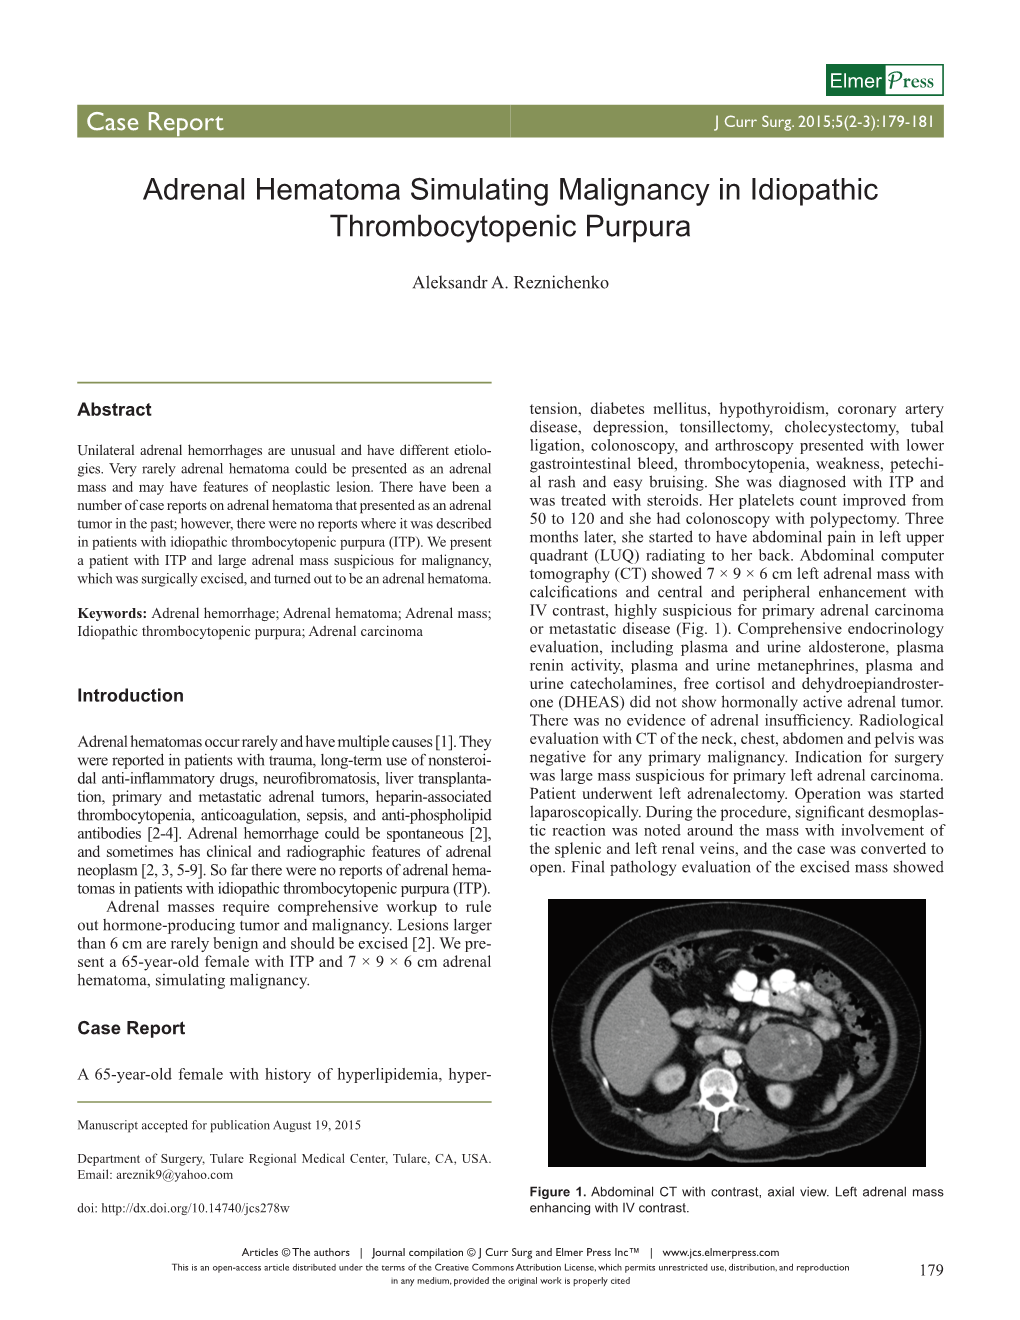 Adrenal Hematoma Simulating Malignancy in Idiopathic Thrombocytopenic Purpura